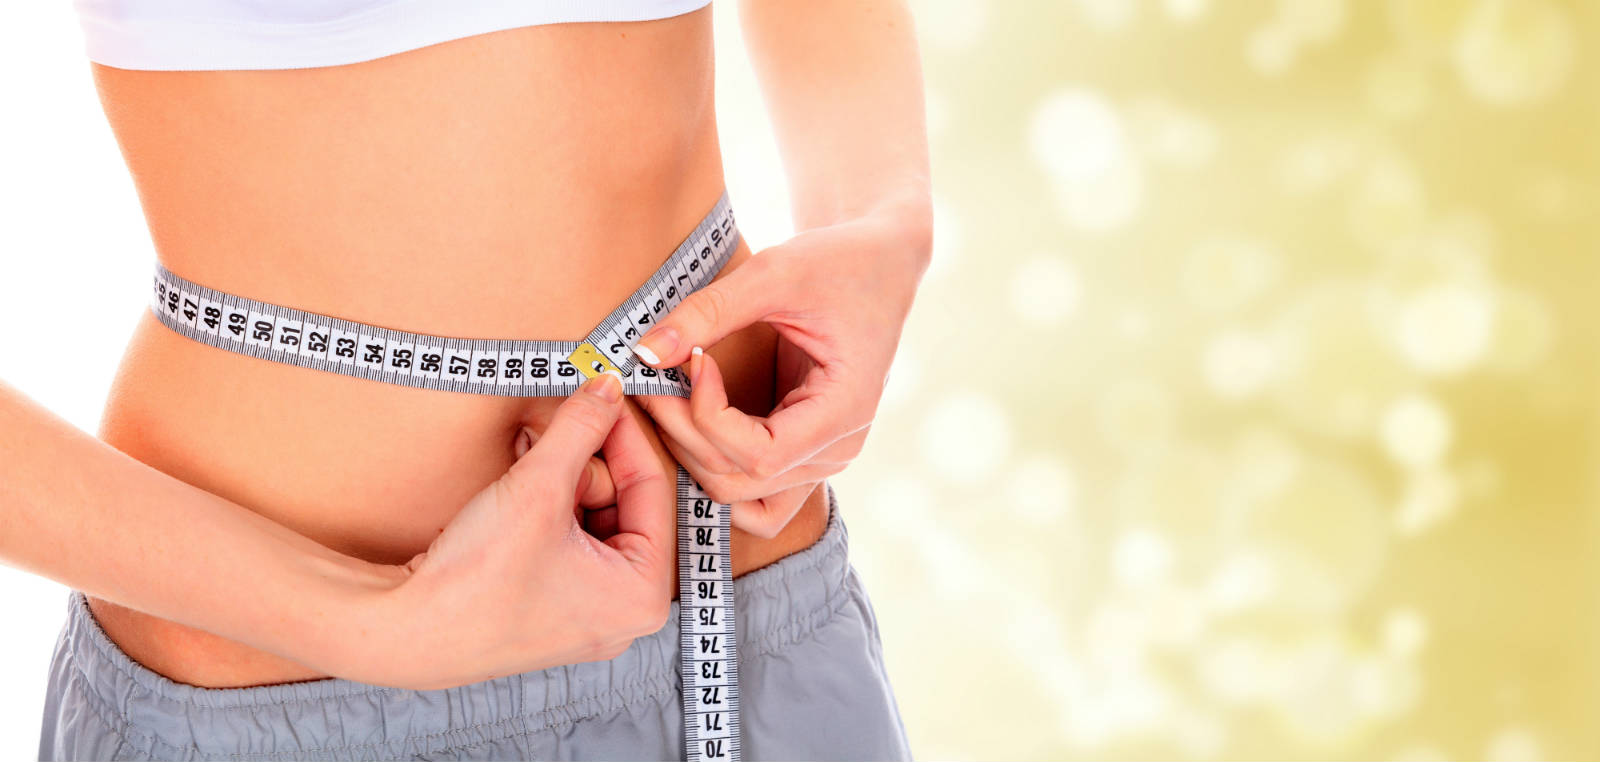 6 วิธีลดน้ำหนัก ง่ายที่สาวๆ ควรฝึกให้เป็นนิสัย